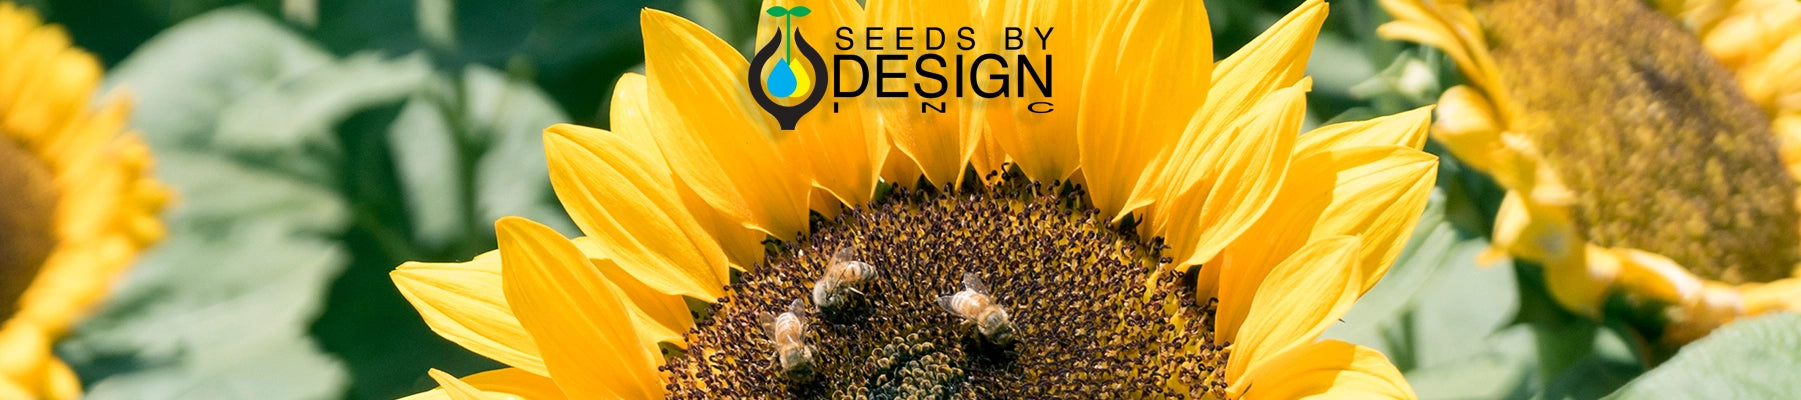 Banner //seedsbydesign.com/cdn/shop/t/28/assets/banner-sxd3-lg.webp?v=7388827203931865131719454112